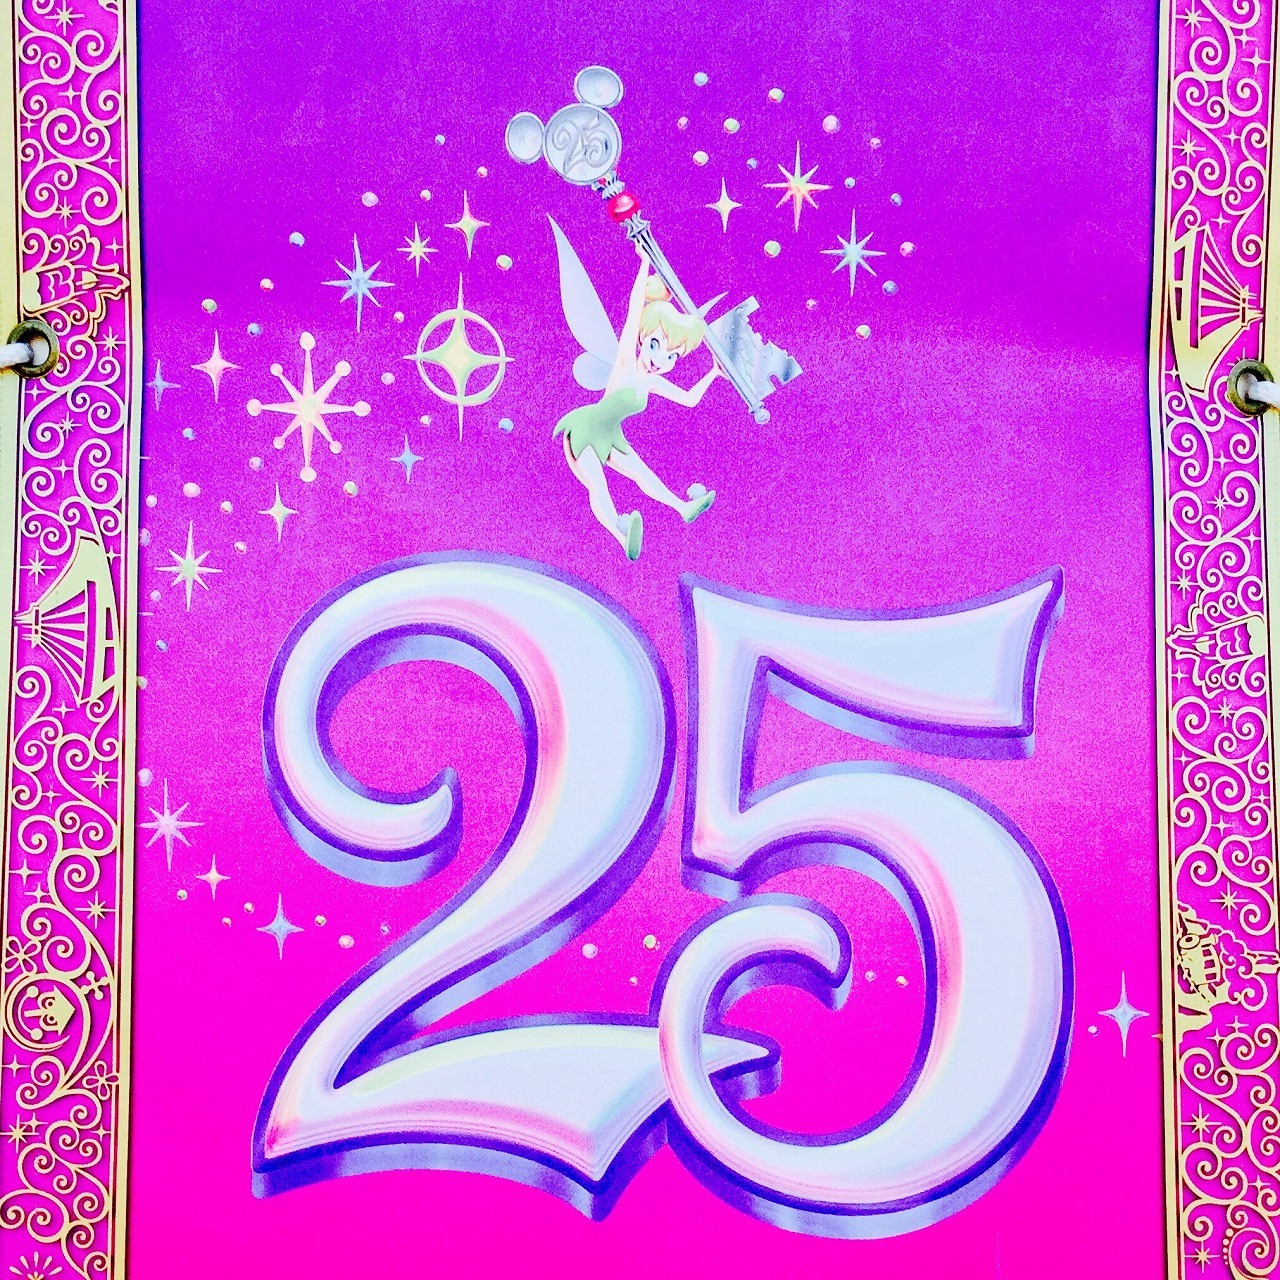 ディズニーランドの25周年ロゴ キャステル Castel ディズニー情報